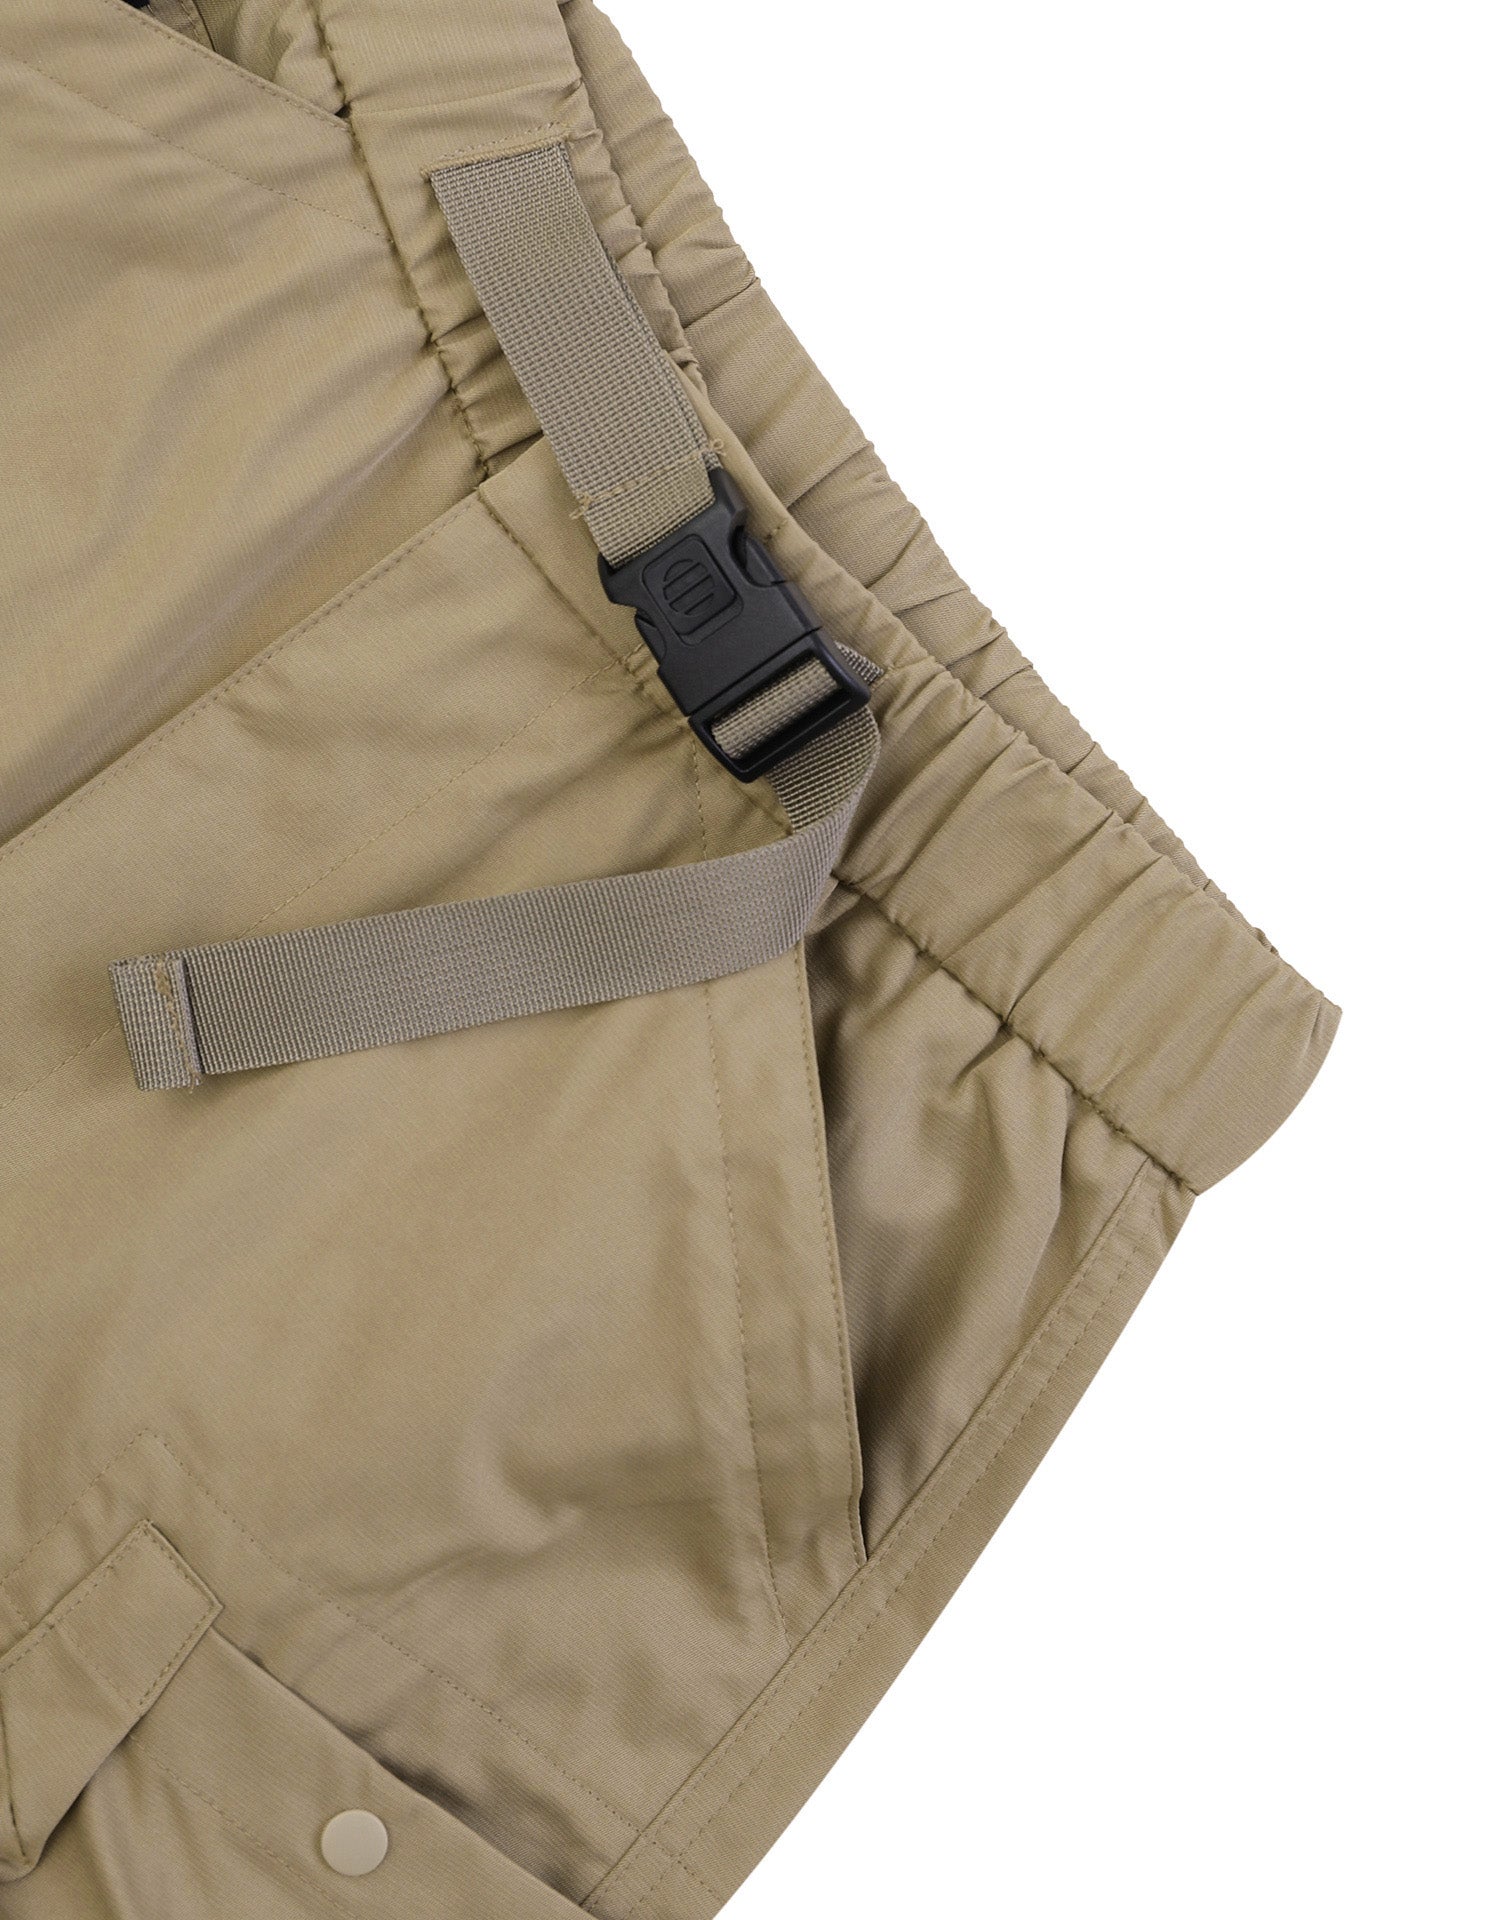 TopBasics Nine Pockets Outdoor Shorts